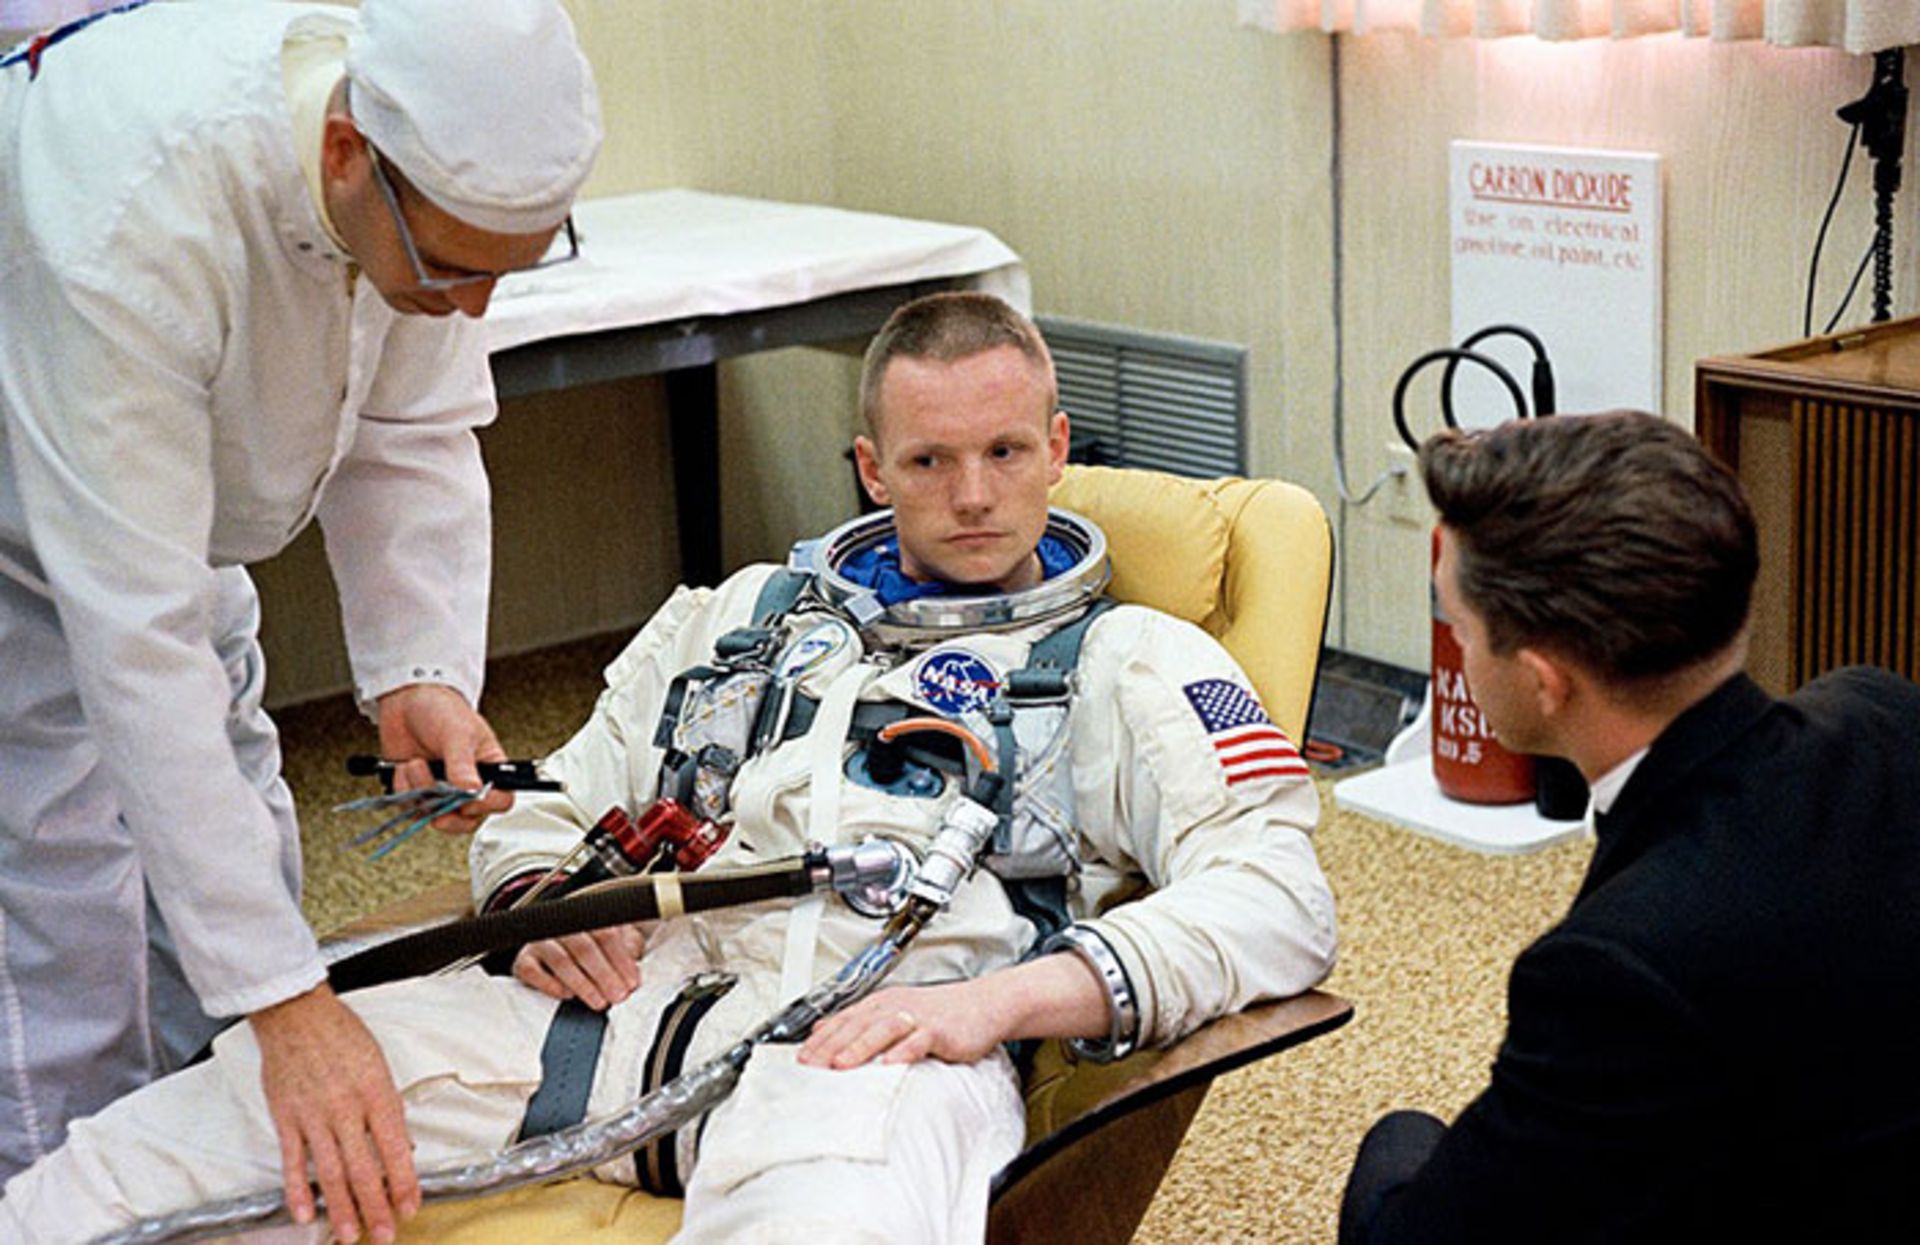 مرجع متخصصين ايران نيل آرمسترانگ / Neil Armstrong